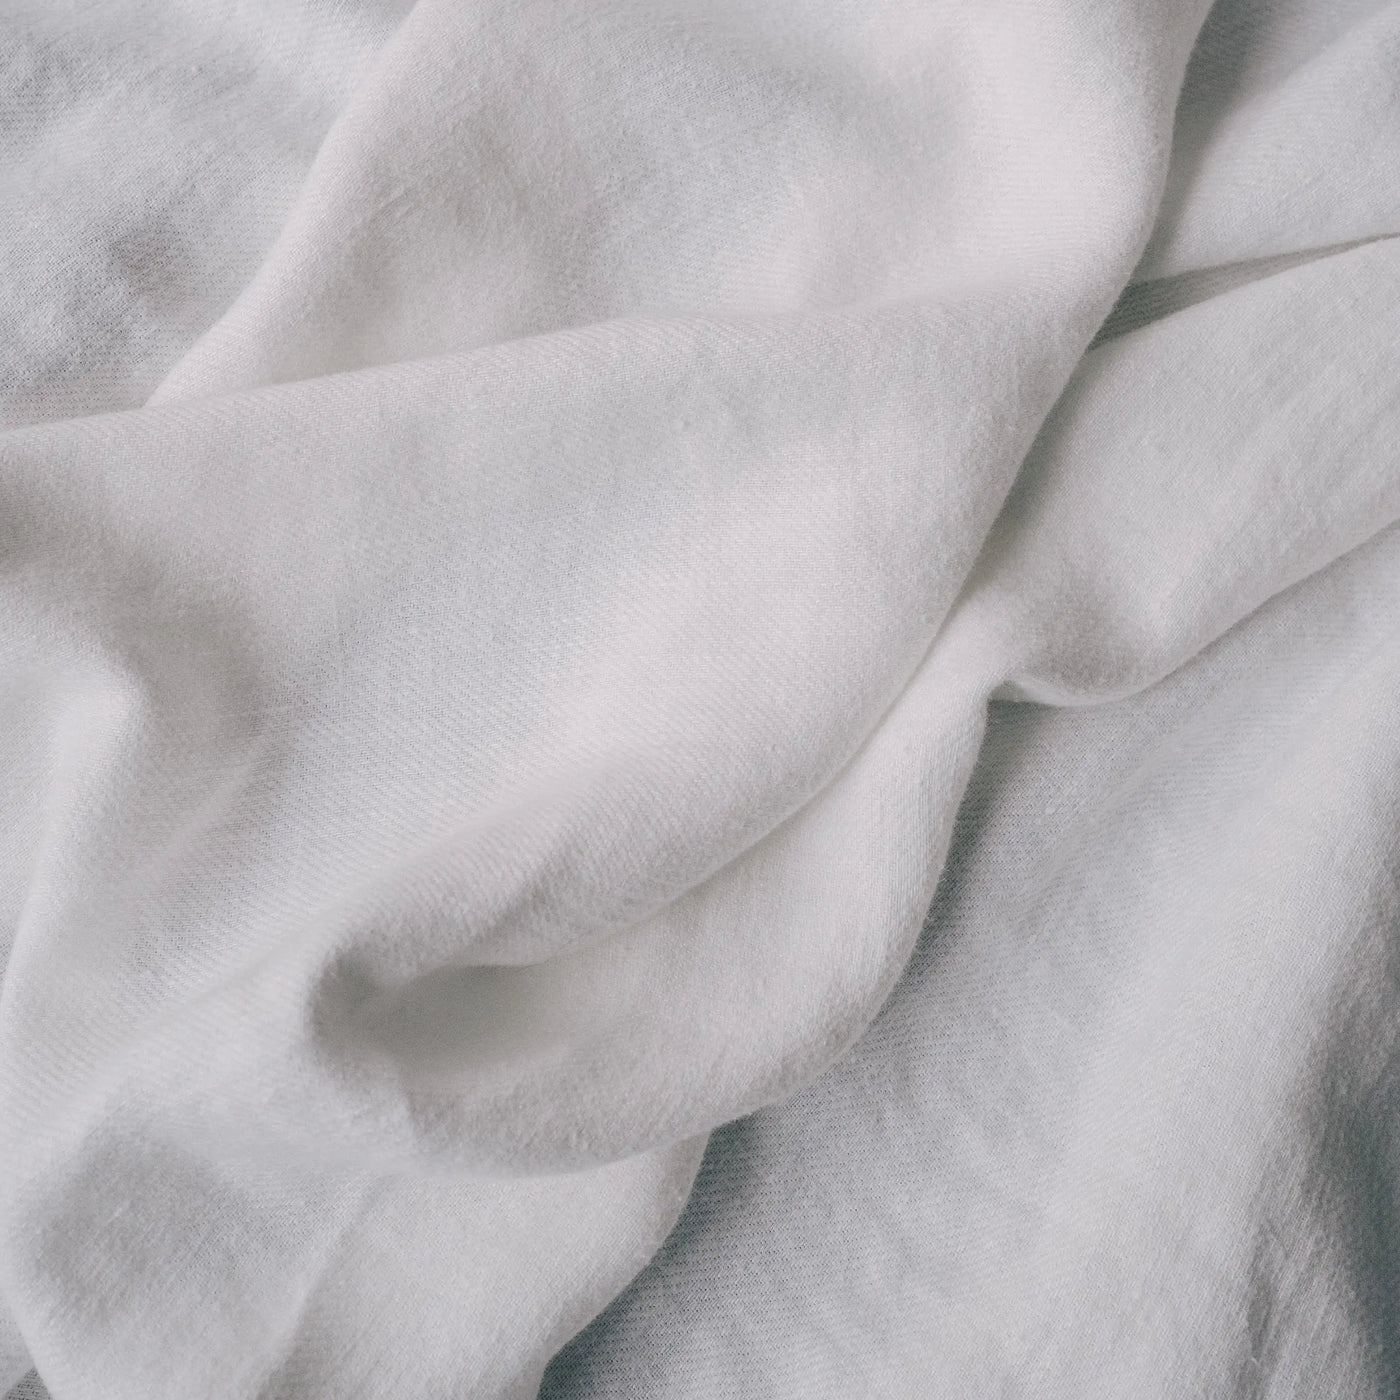 Acquista ora la coperta di lino premium bianca presso Tintory Store 1